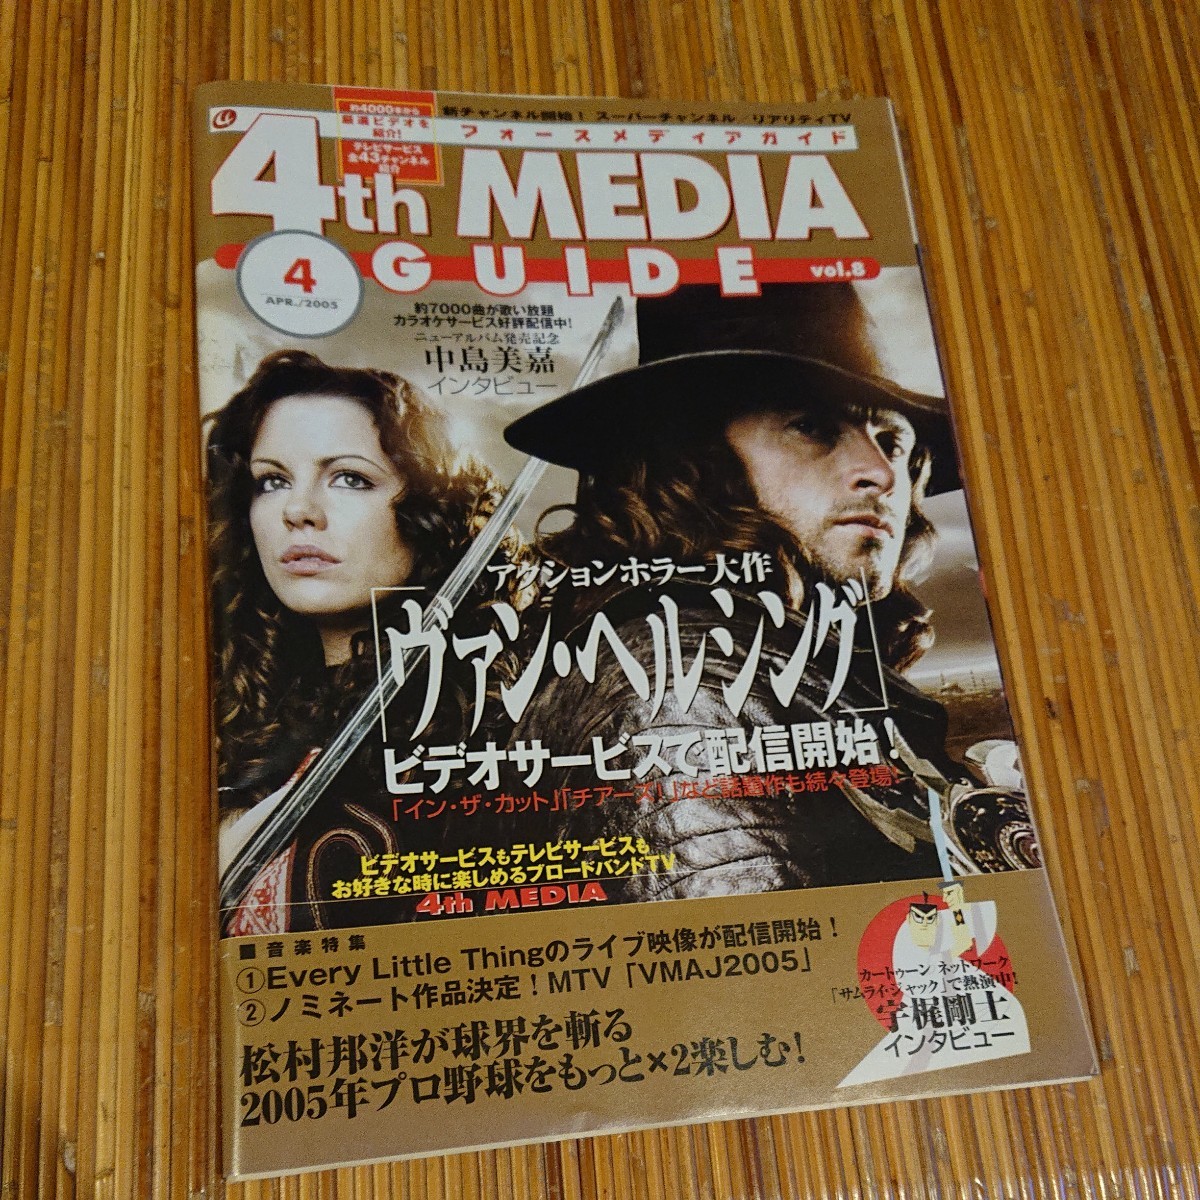 「4th MEDIA GUIDE」vol.8 2005年4月号 ヴァン・ヘルシング 宇梶剛士 中島美嘉 松村邦洋